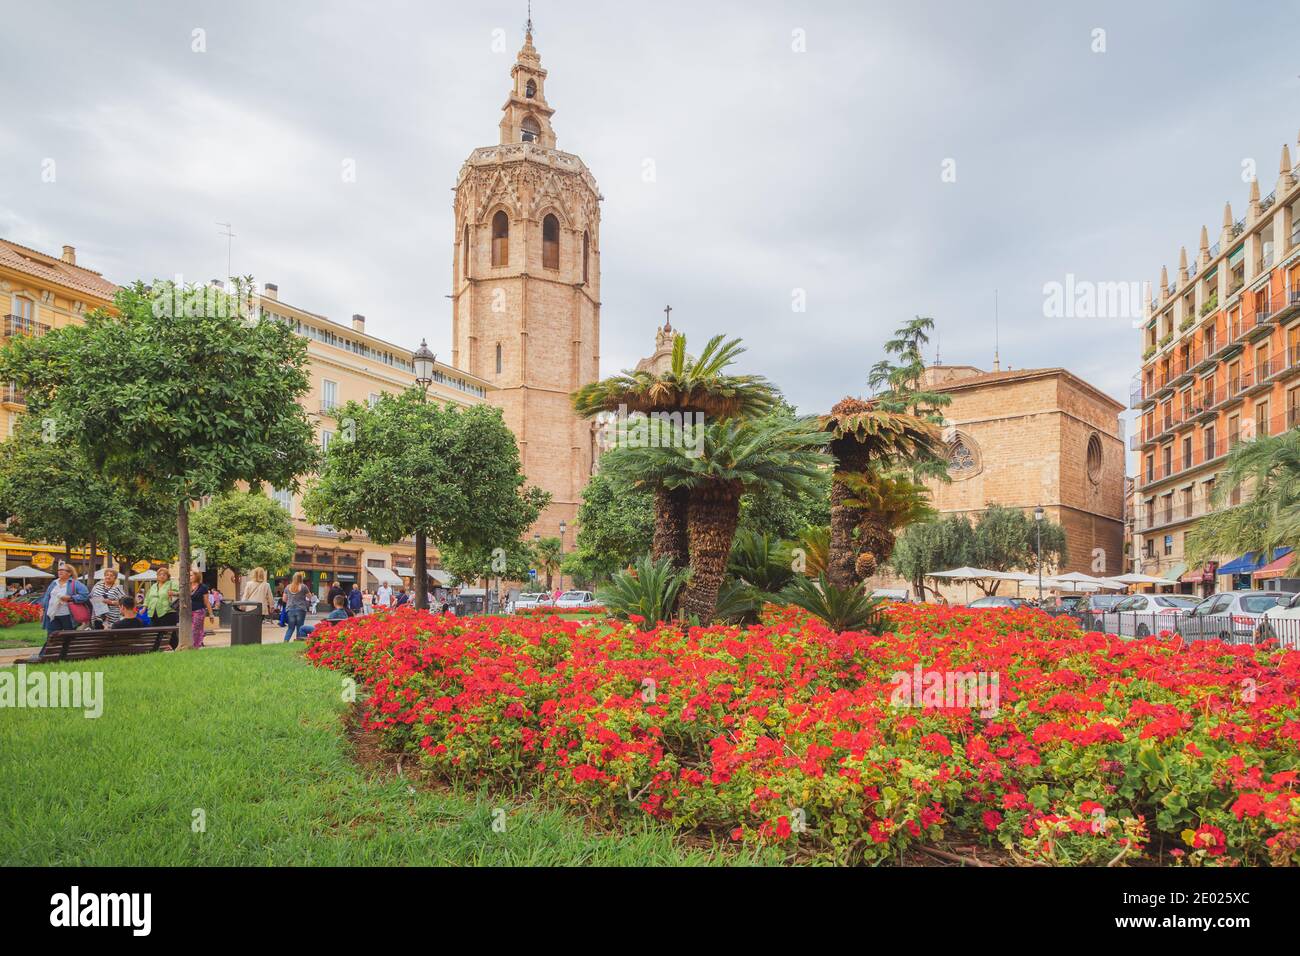 Valence, Espagne - avril 16 2015 : les touristes profitent d'une journée ensoleillée sur la Plaza de la Virgen, la place principale historique de Valence, Espagne Banque D'Images